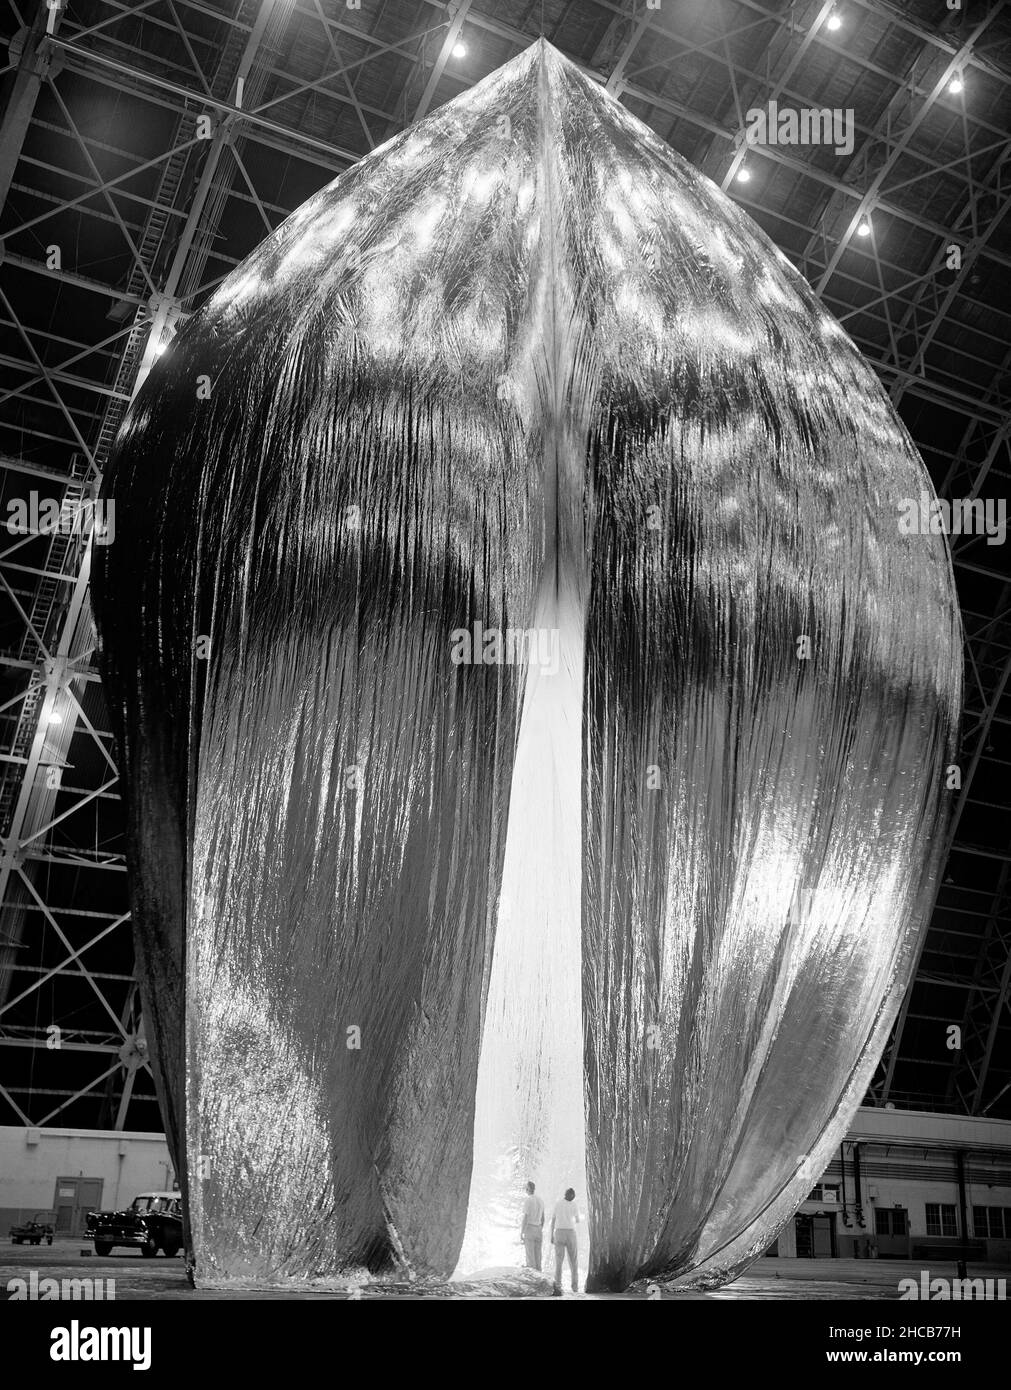 Inflationstests des Echo 1 Satelliten in Weeksville, N.C. 1958-L-03603 Bild die Langley-Ingenieure Edwin Kilgore (Mitte), Norman Crabill (rechts) und ein nicht identifizierter Mann werfen während der Inflationstests einen Blick in den riesigen Ballon. Stockfoto